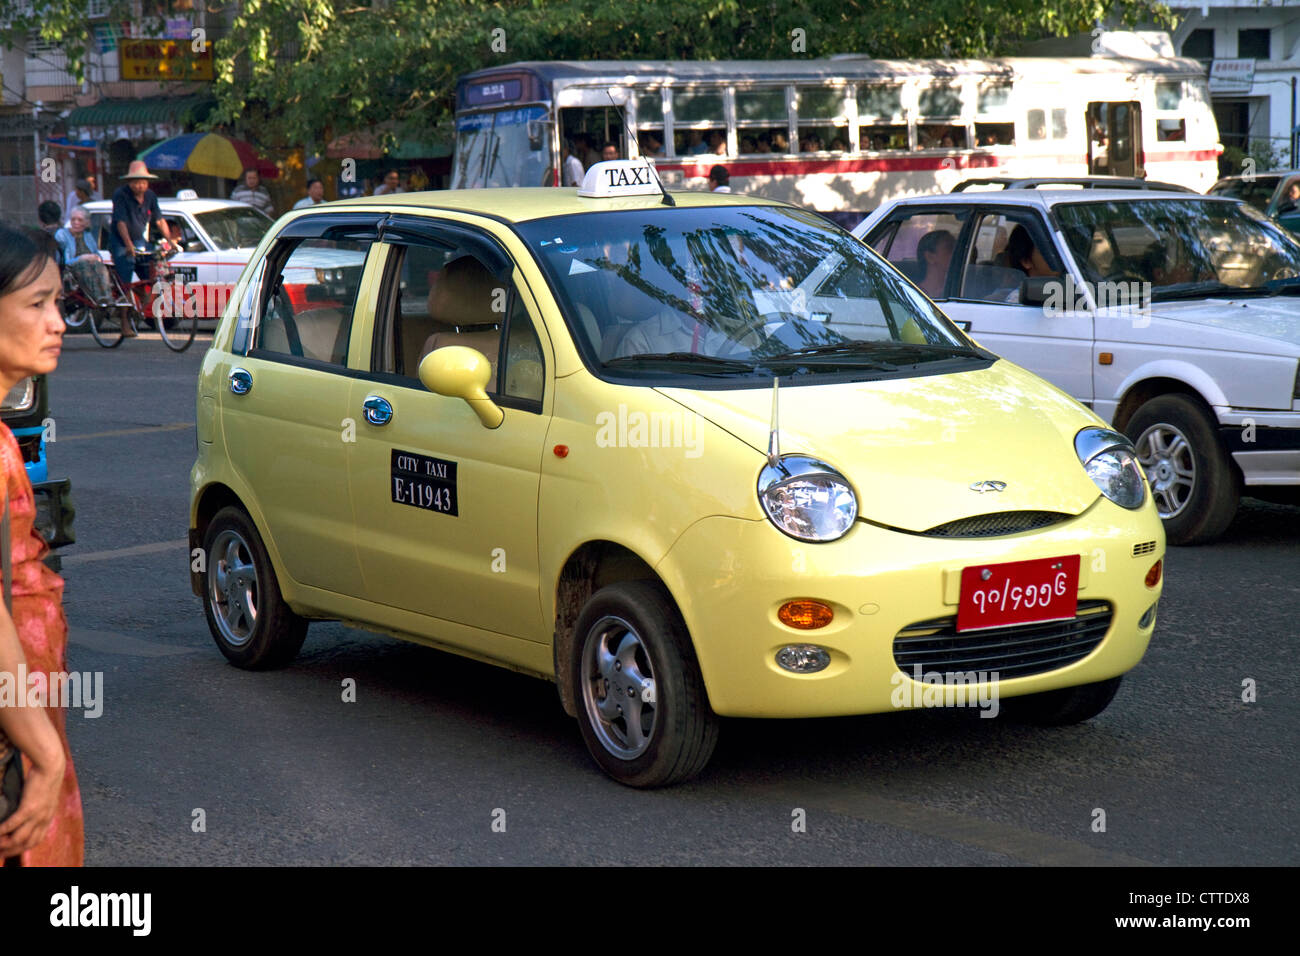 Chery Automobile utilisé comme un taxi à Yangon (Rangoon), la Birmanie (Myanmar). Banque D'Images